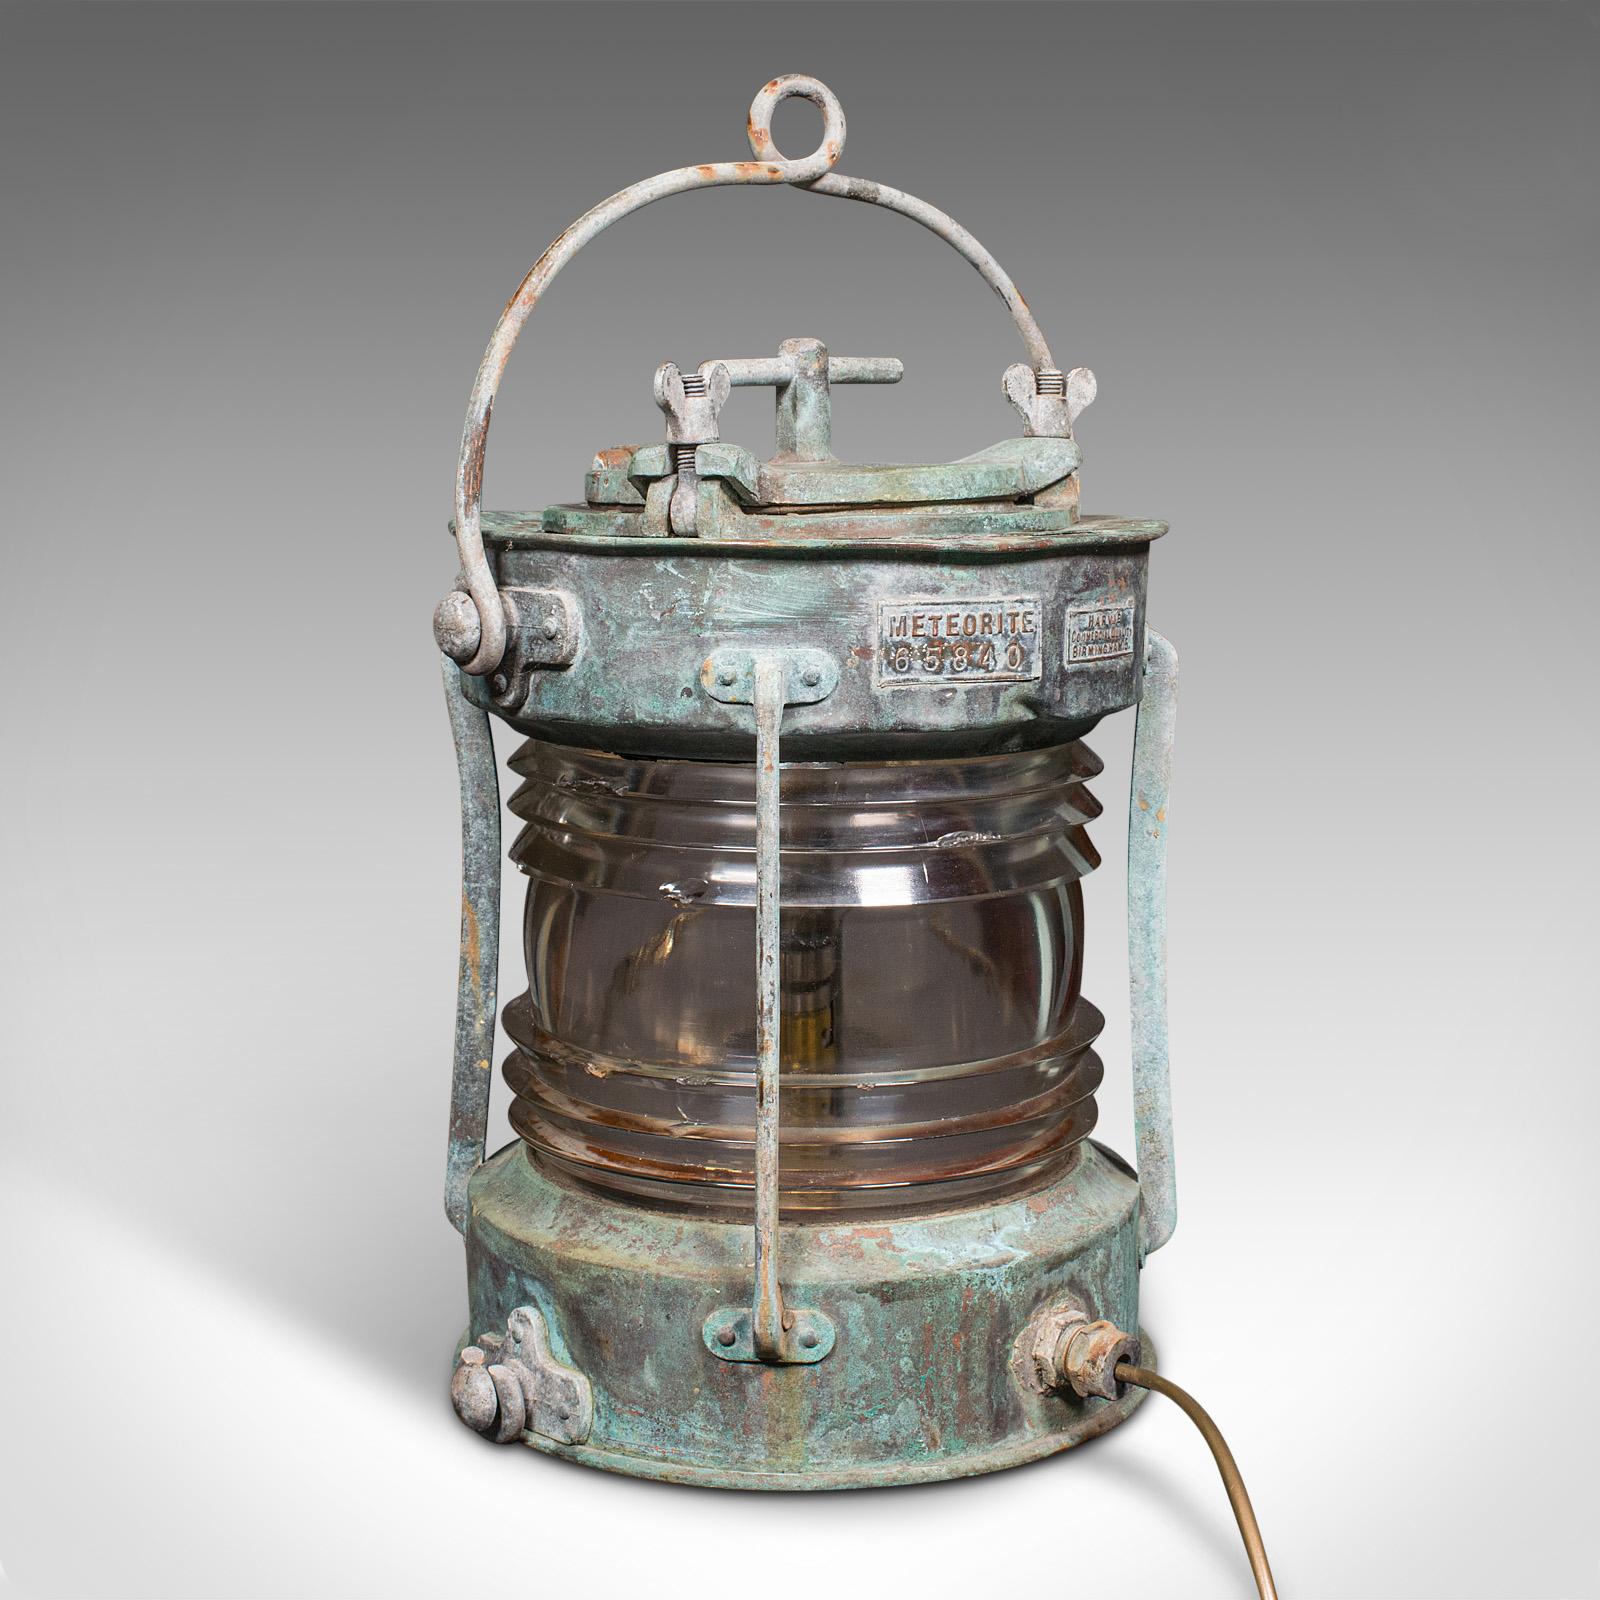 Dies ist eine antike Schiffsankerlampe. Schwere englische Seelampe aus Bronze und Glas aus der Edwardianischen Periode, um 1910.

Auffallend nautisch, mit einem herrlichen verwitterten Aussehen
Zeigt eine wünschenswerte gealterte Patina und in